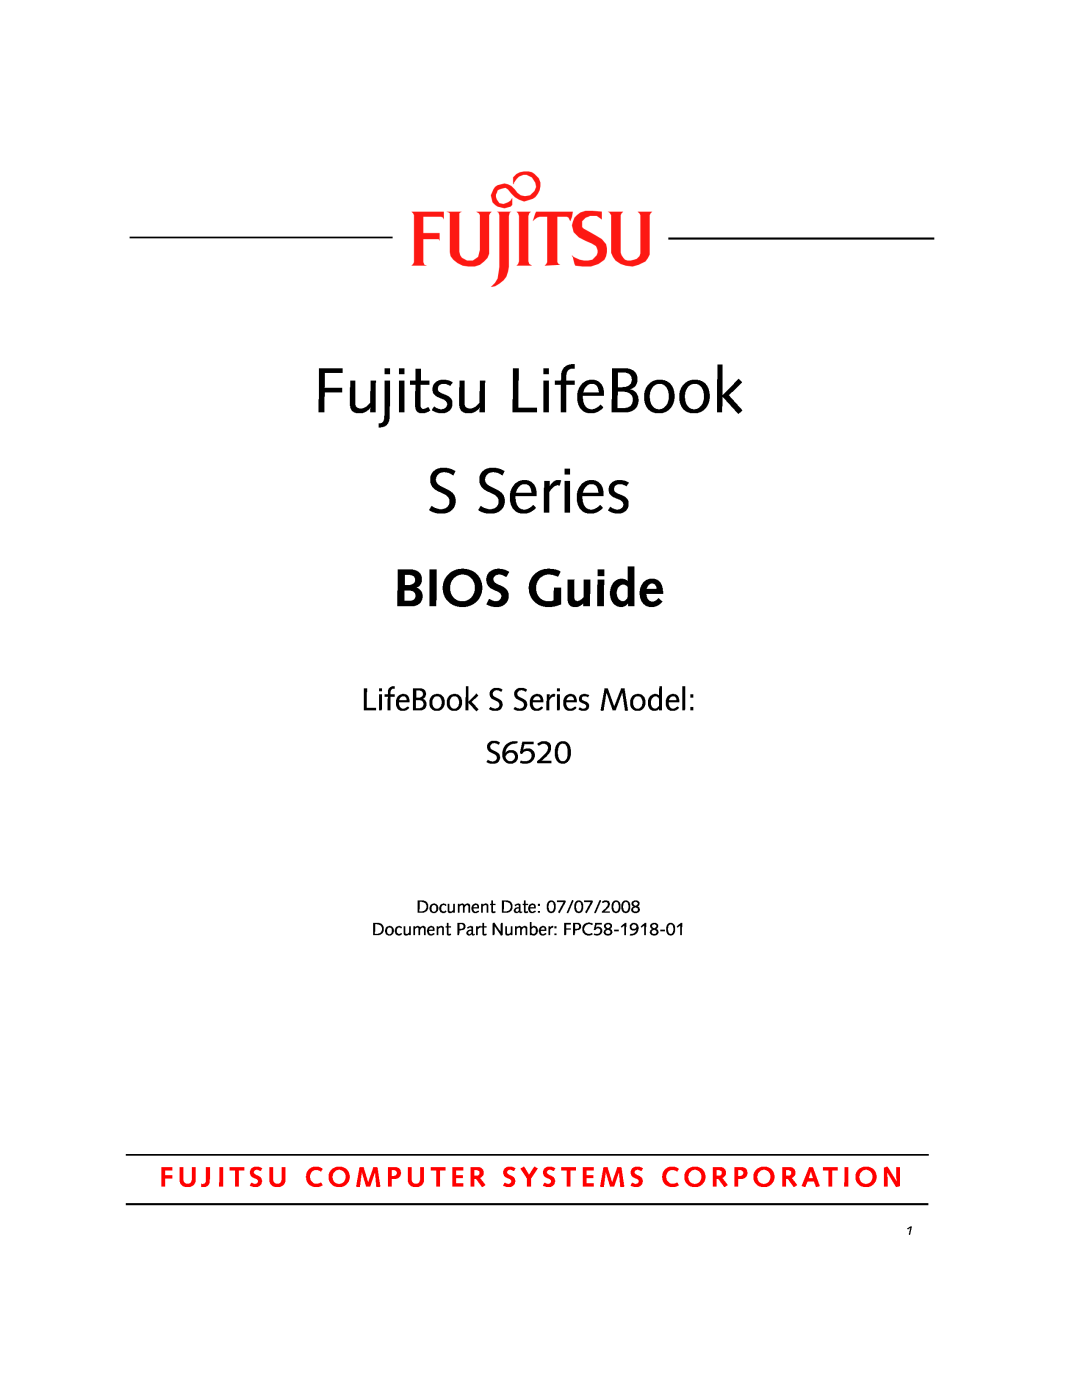 Fujitsu manual Fujitsu LifeBook S Series, BIOS Guide, LifeBook S Series Model S6520 